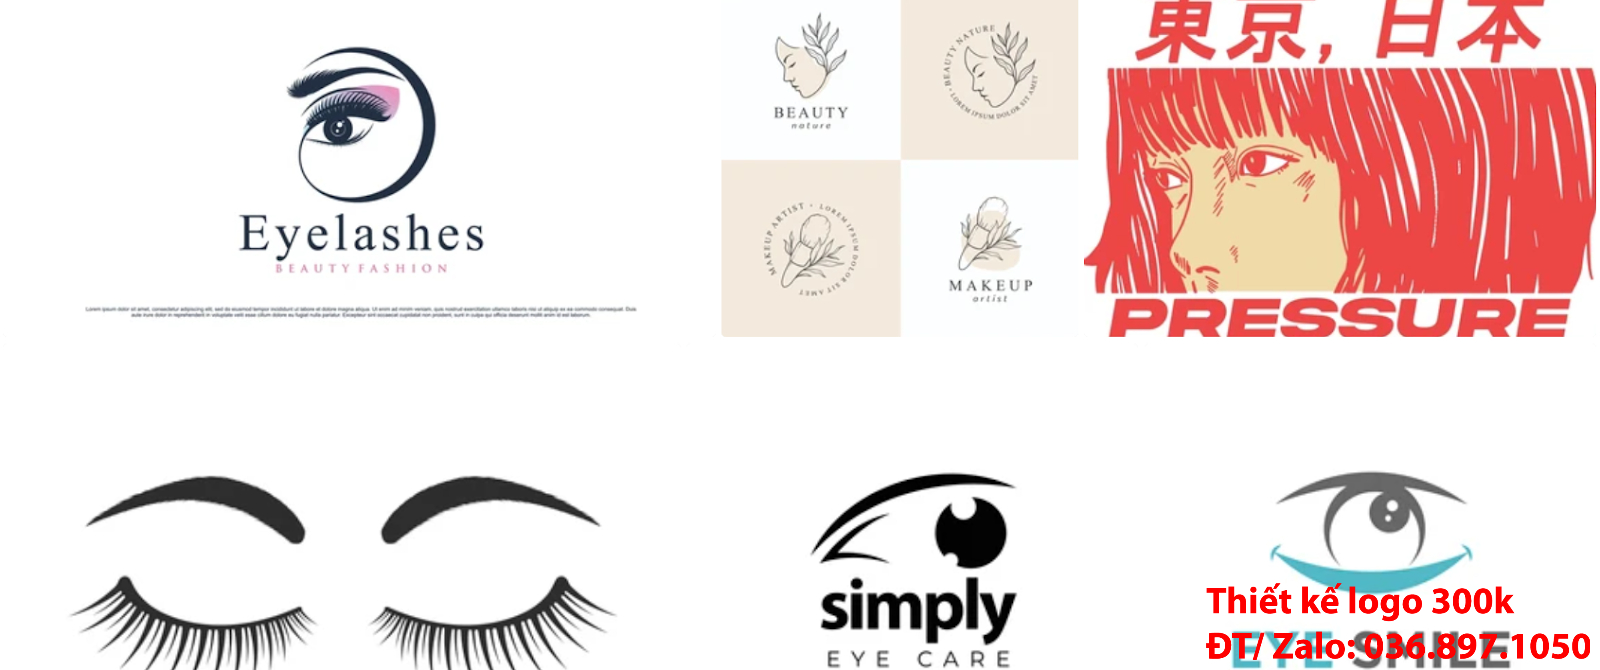 Tạo logo thẩm mỹ lông mi mắt sang trọng khác biệt chuyên nghiệp tại TpHCM giá rẻ 300k